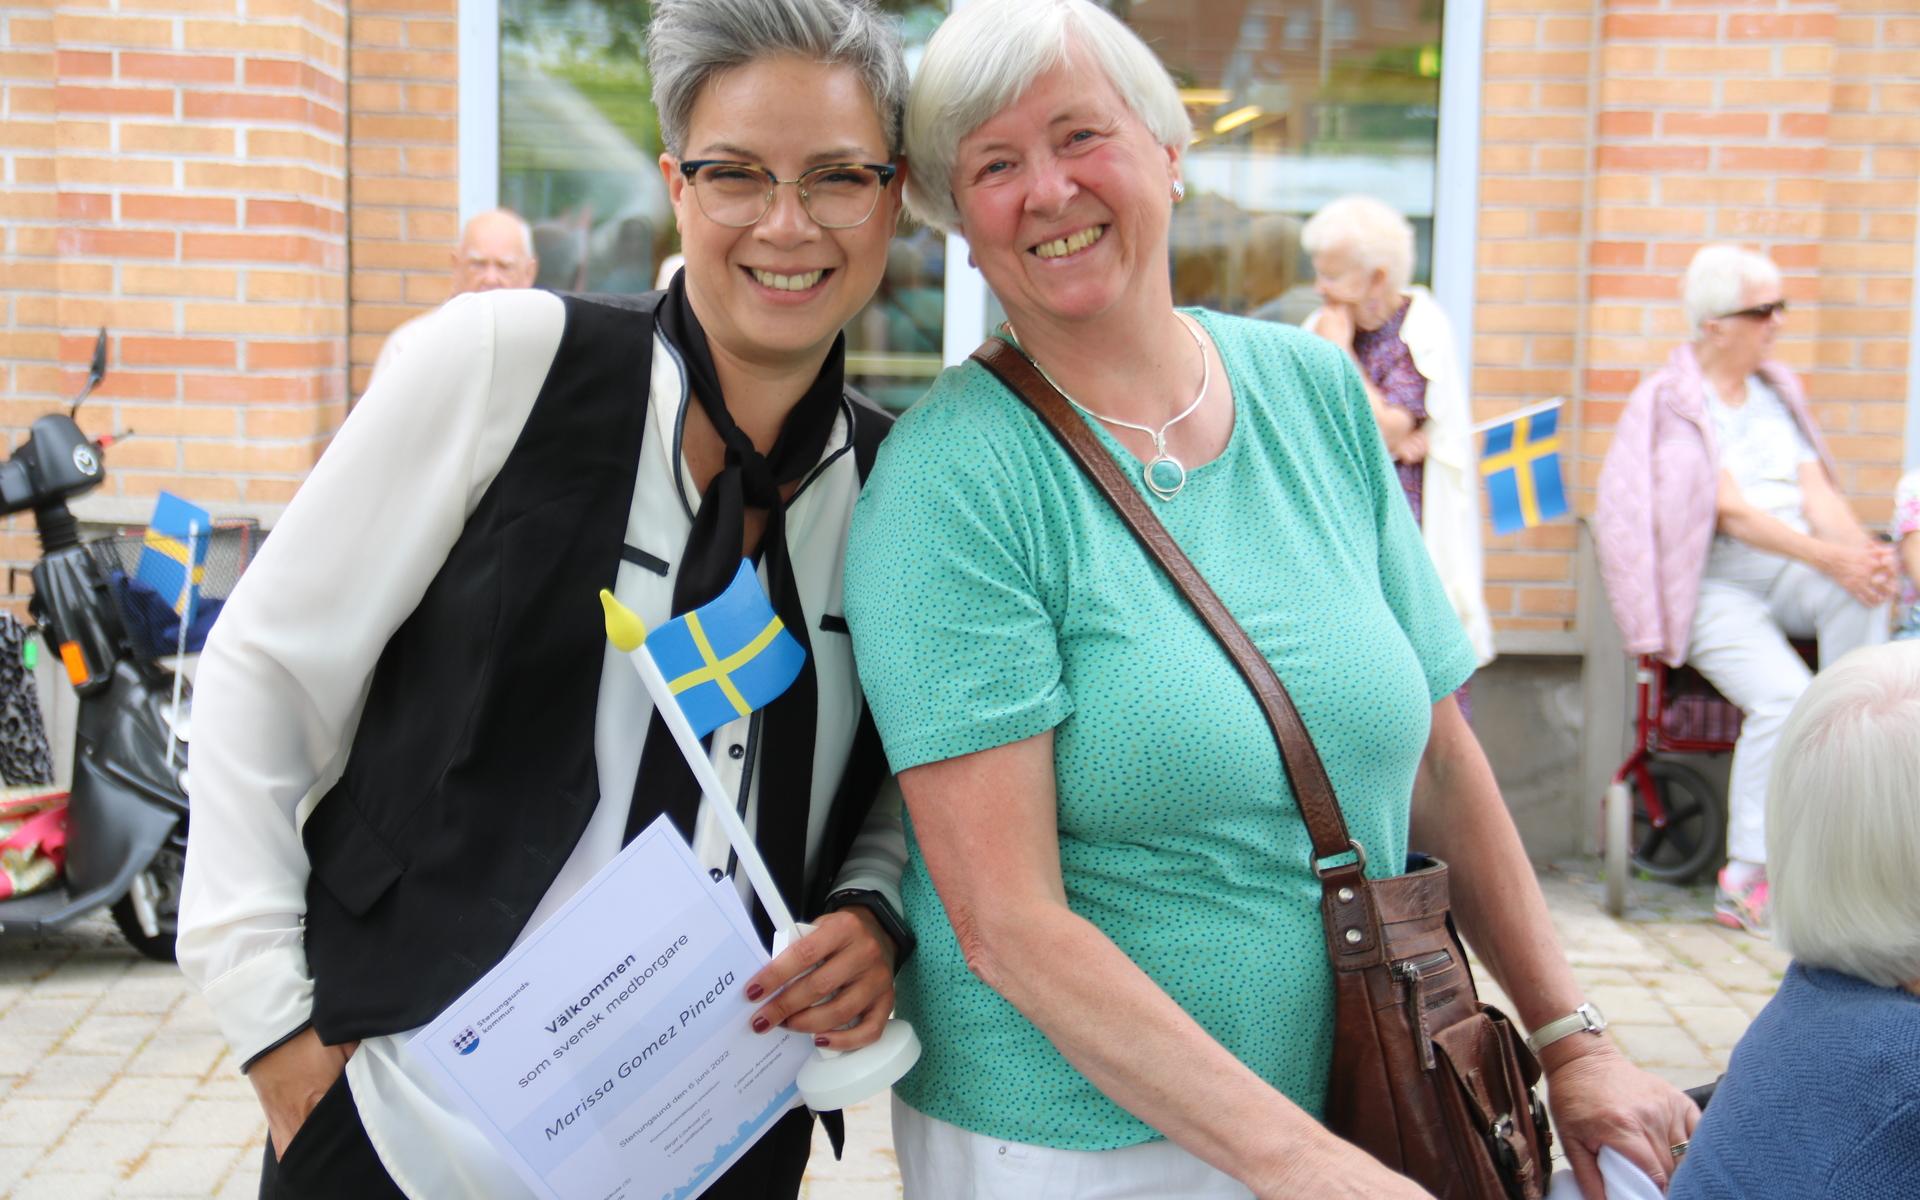 Nya svenska medborgarna Marissa Gomez Pineda från Mexico och Elisabeth Jolly från Tyskland fick diplom med välkomnande från Stenungsunds kommun.